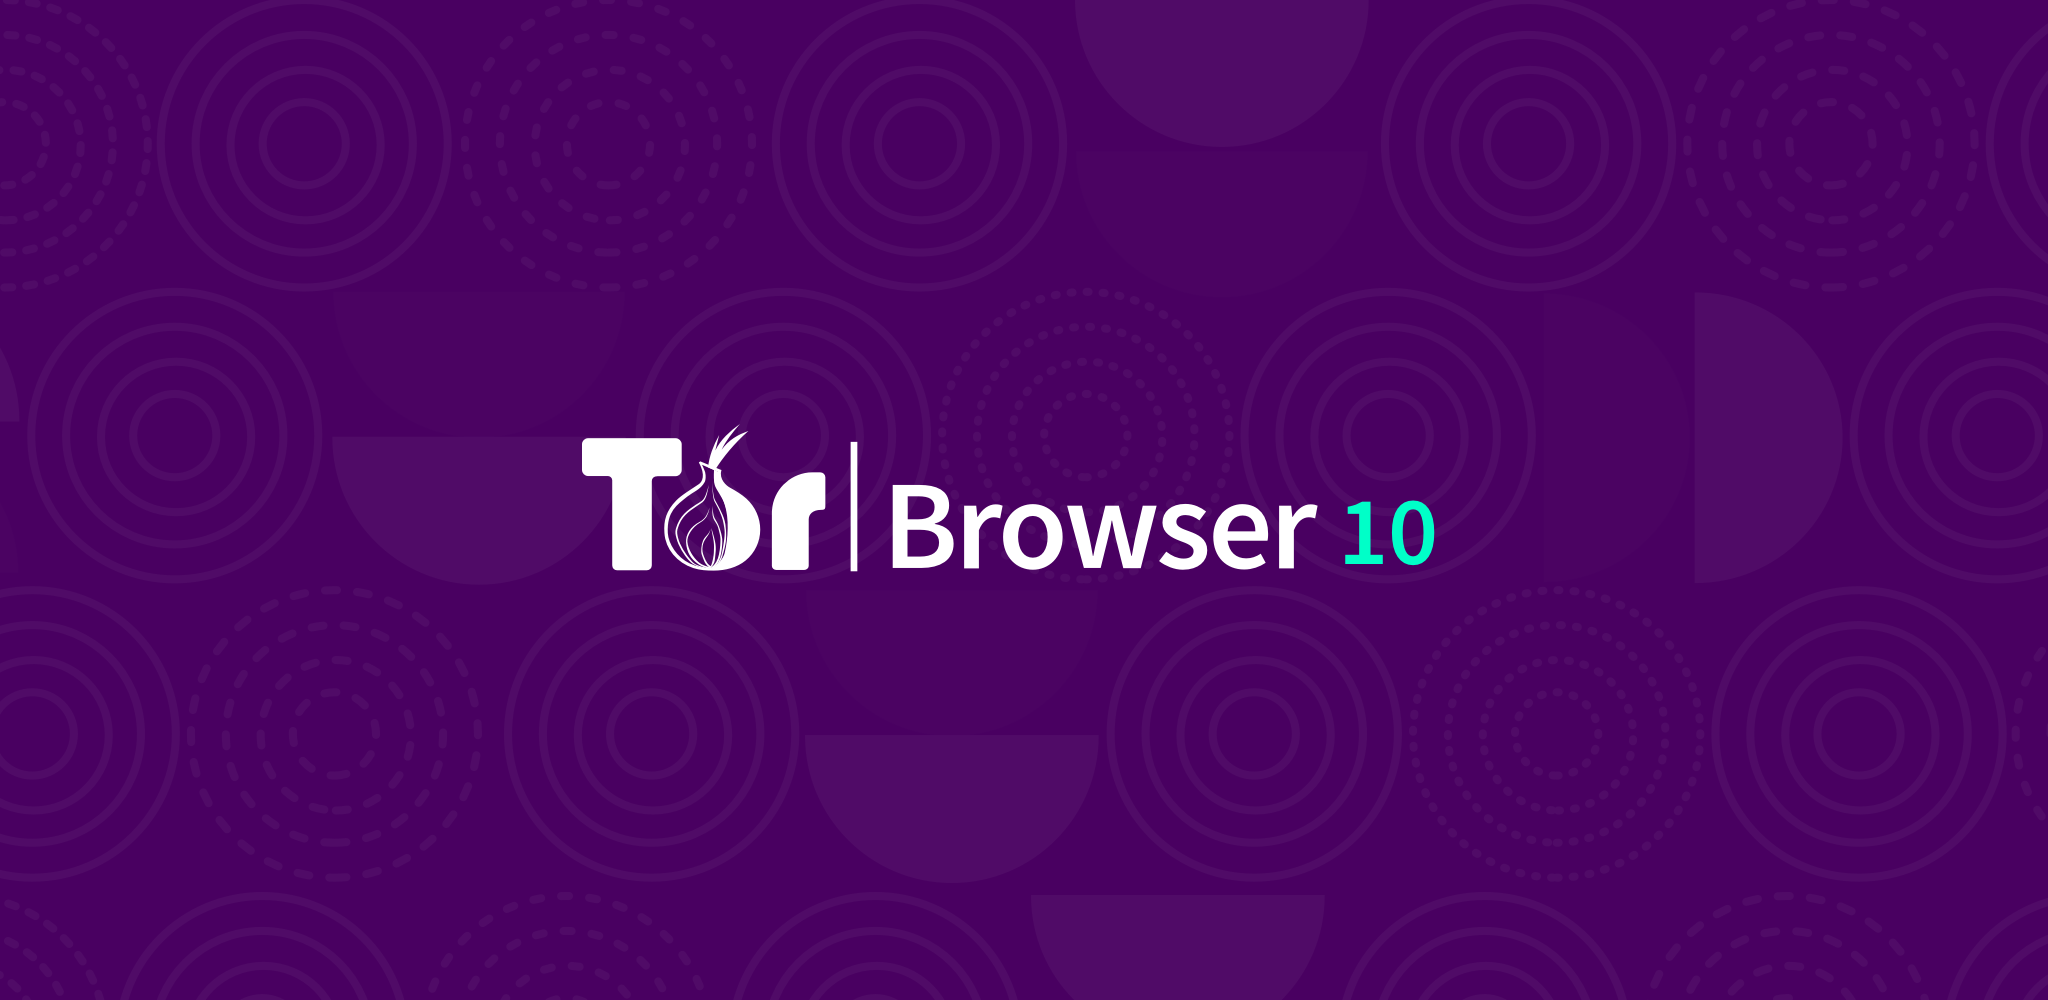 tor browser 5 mega